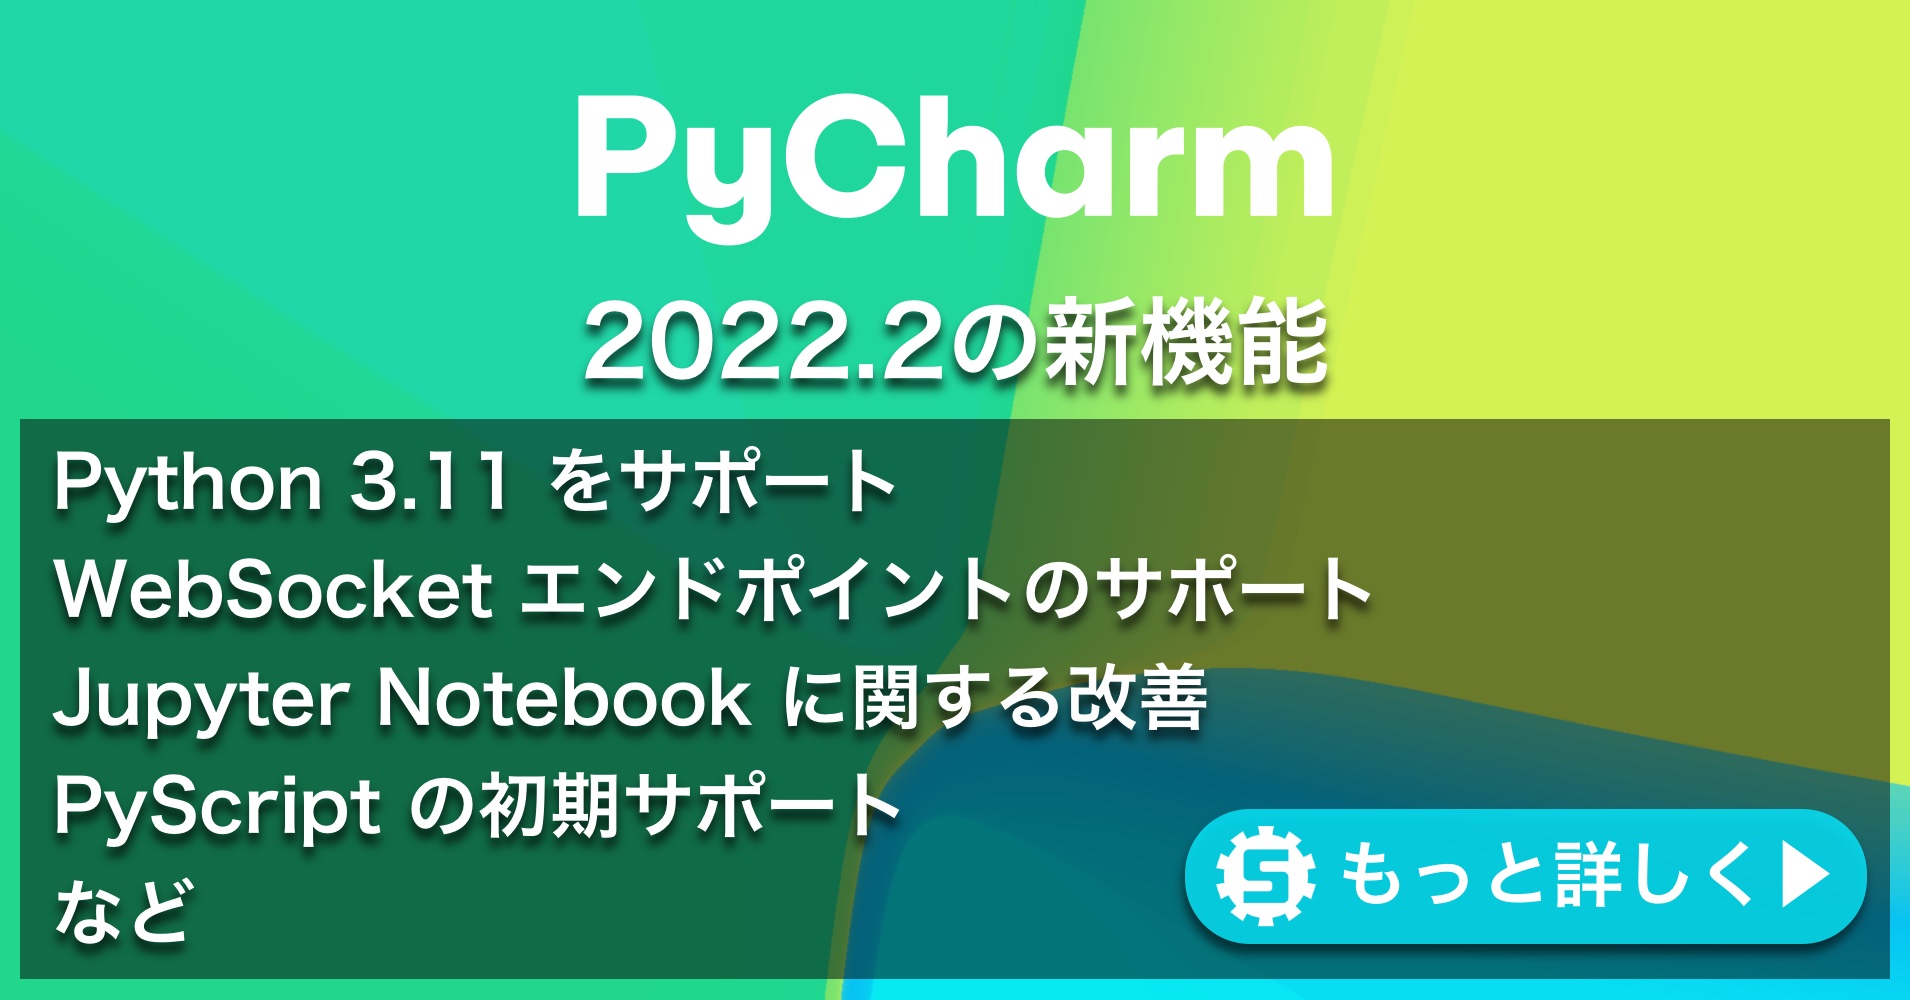 PyCharm 2022.2の新機能